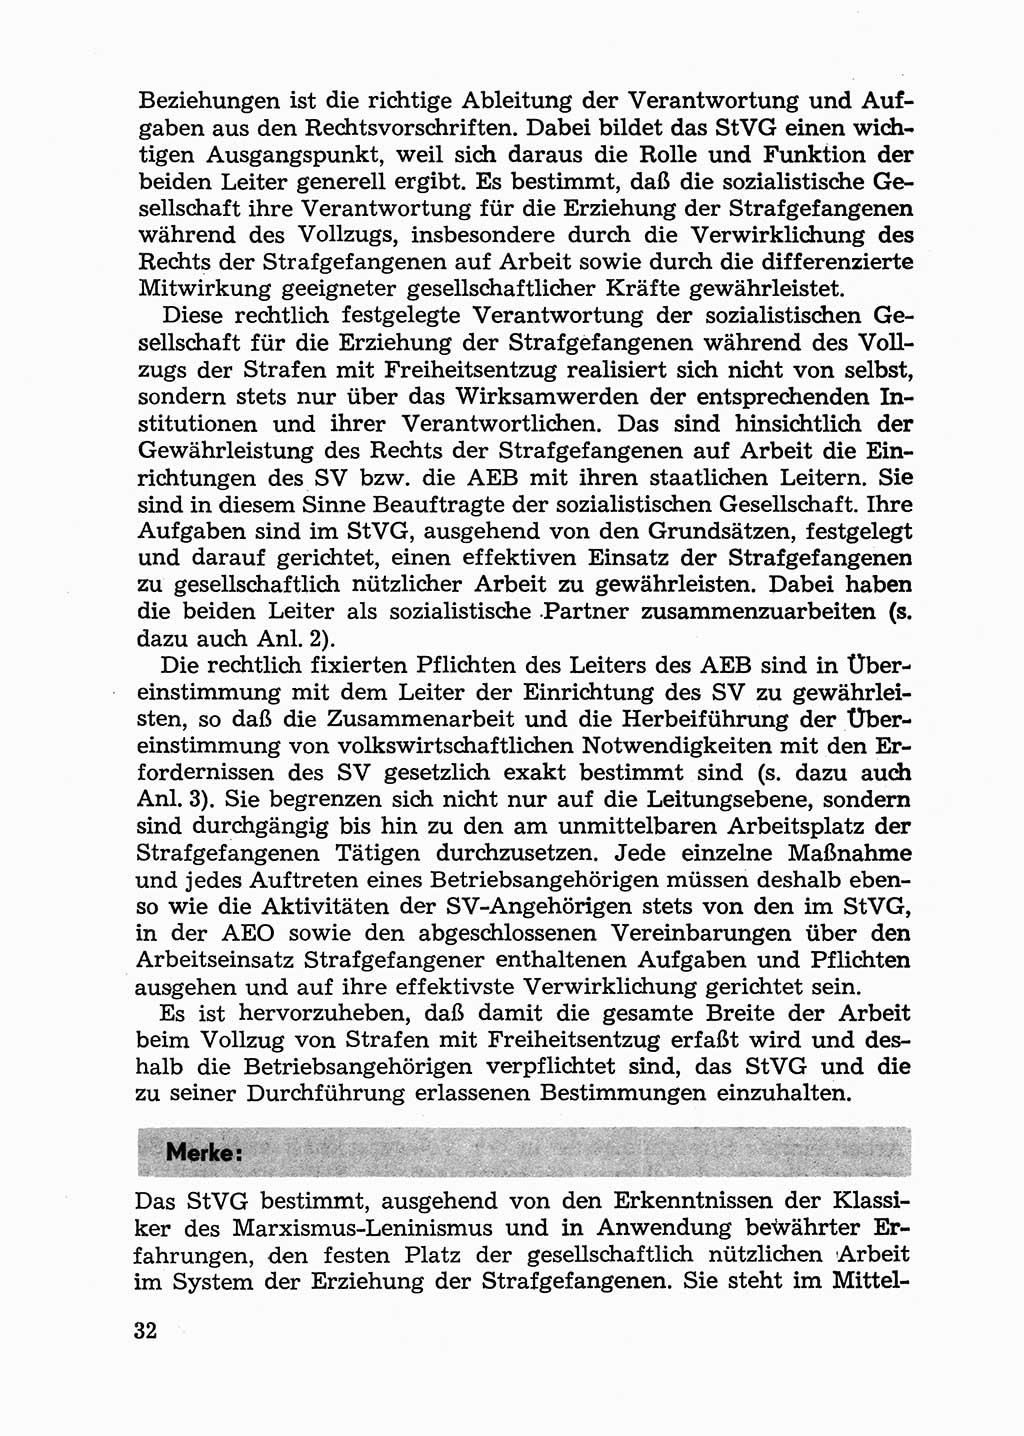 Handbuch für Betriebsangehörige, Abteilung Strafvollzug (SV) [Ministerium des Innern (MdI) Deutsche Demokratische Republik (DDR)] 1981, Seite 32 (Hb. BA Abt. SV MdI DDR 1981, S. 32)